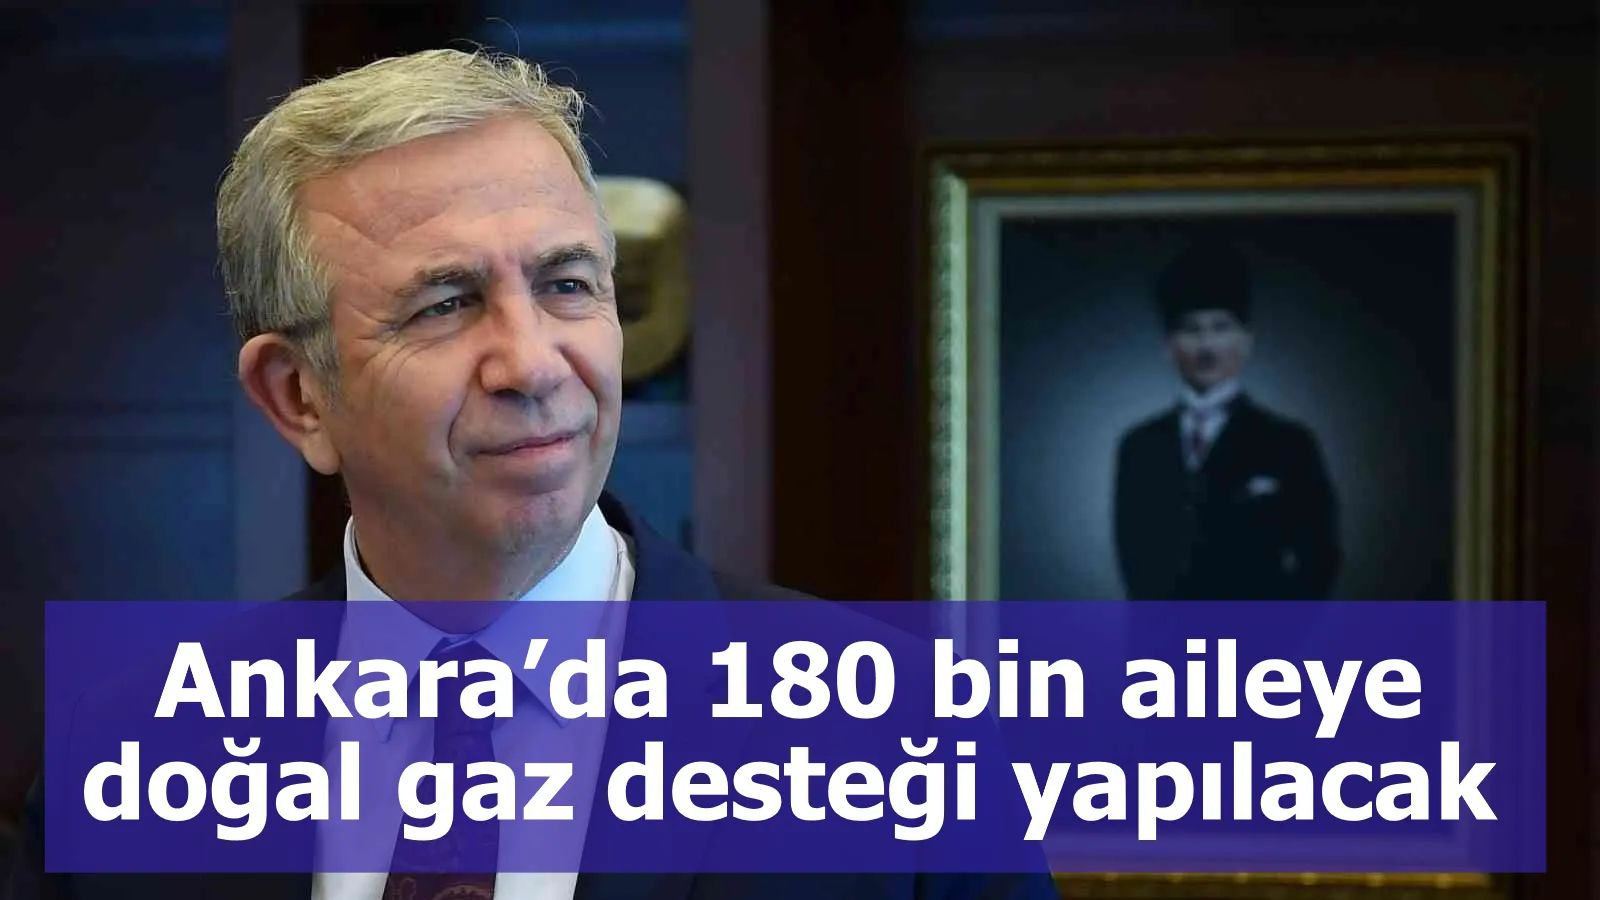 Ankara’da 180 bin aileye doğal gaz desteği yapılacak